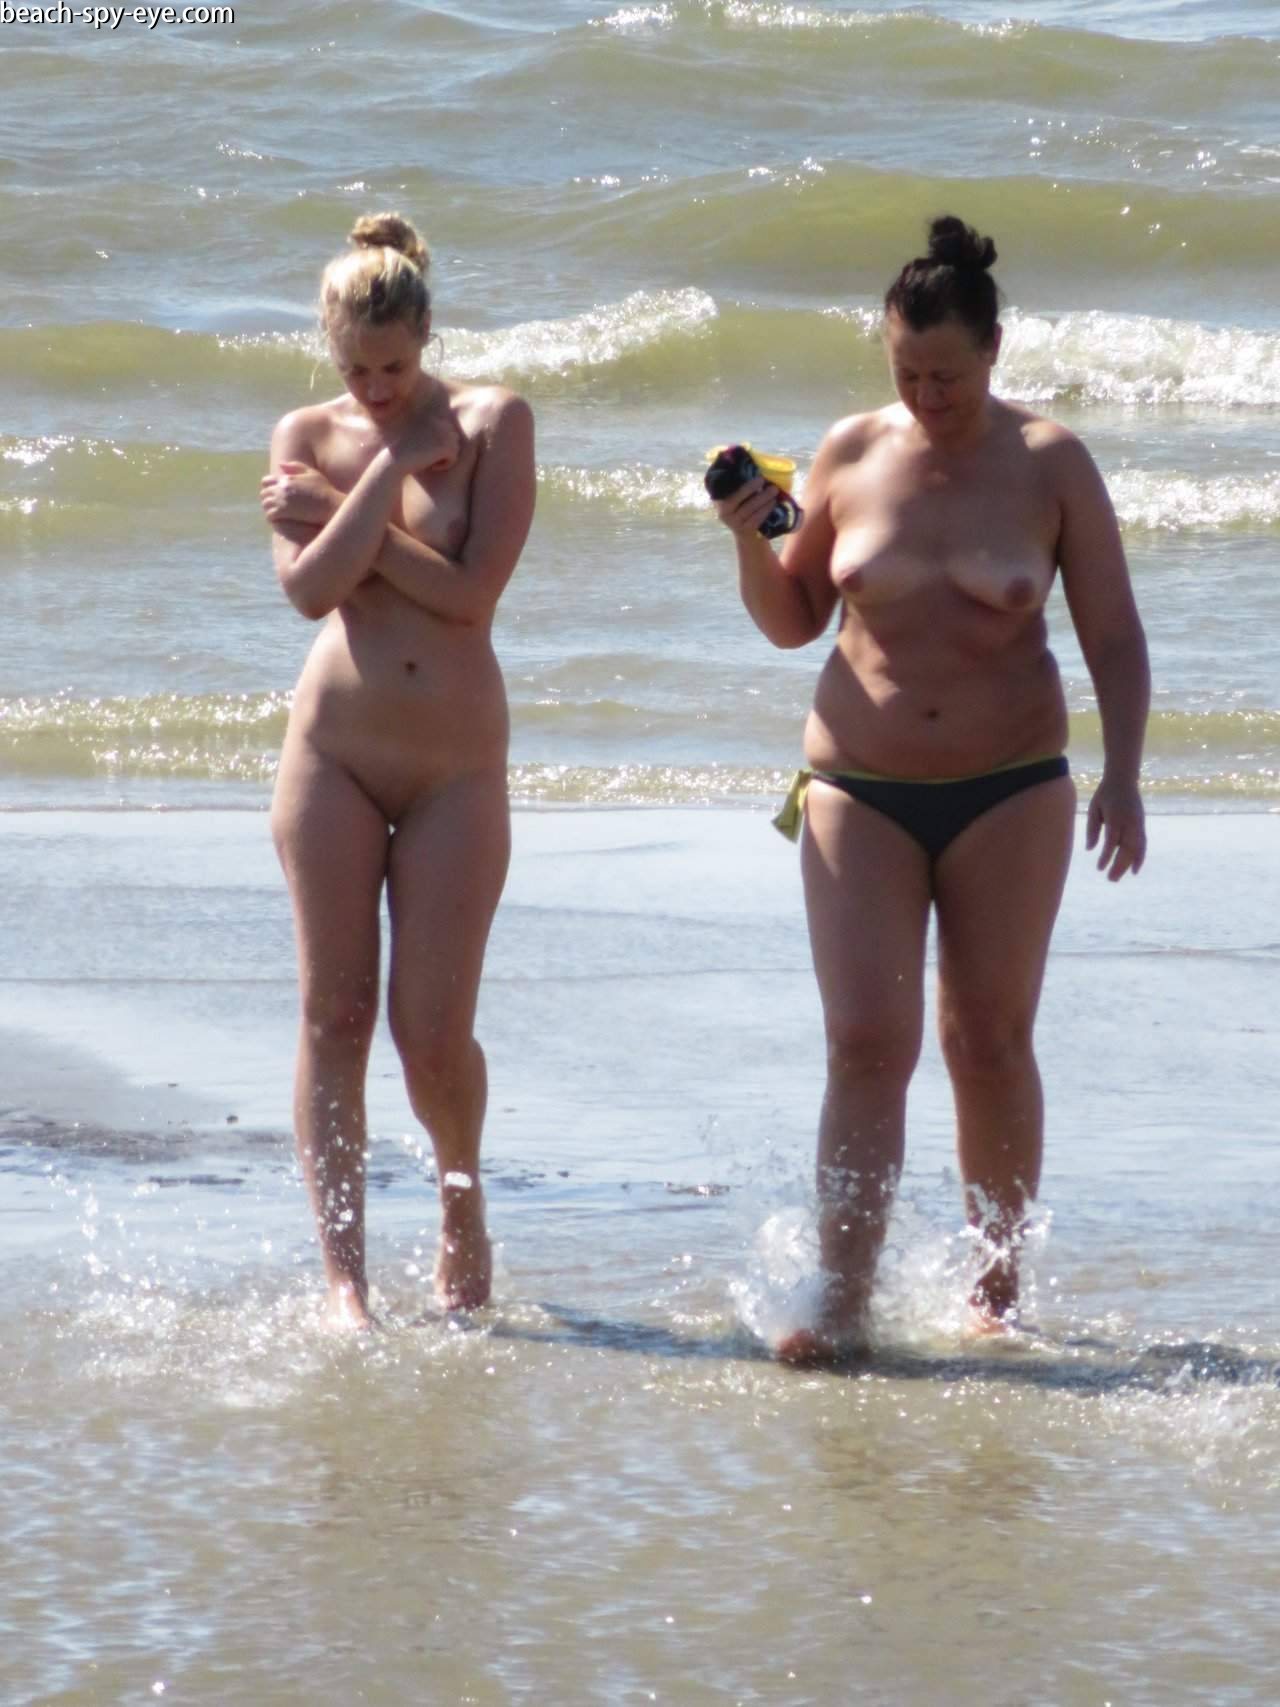 https://pbs-0.adult-empire.com/39/3926/beach_nude_women-6095/5-beach_nude_women.jpg